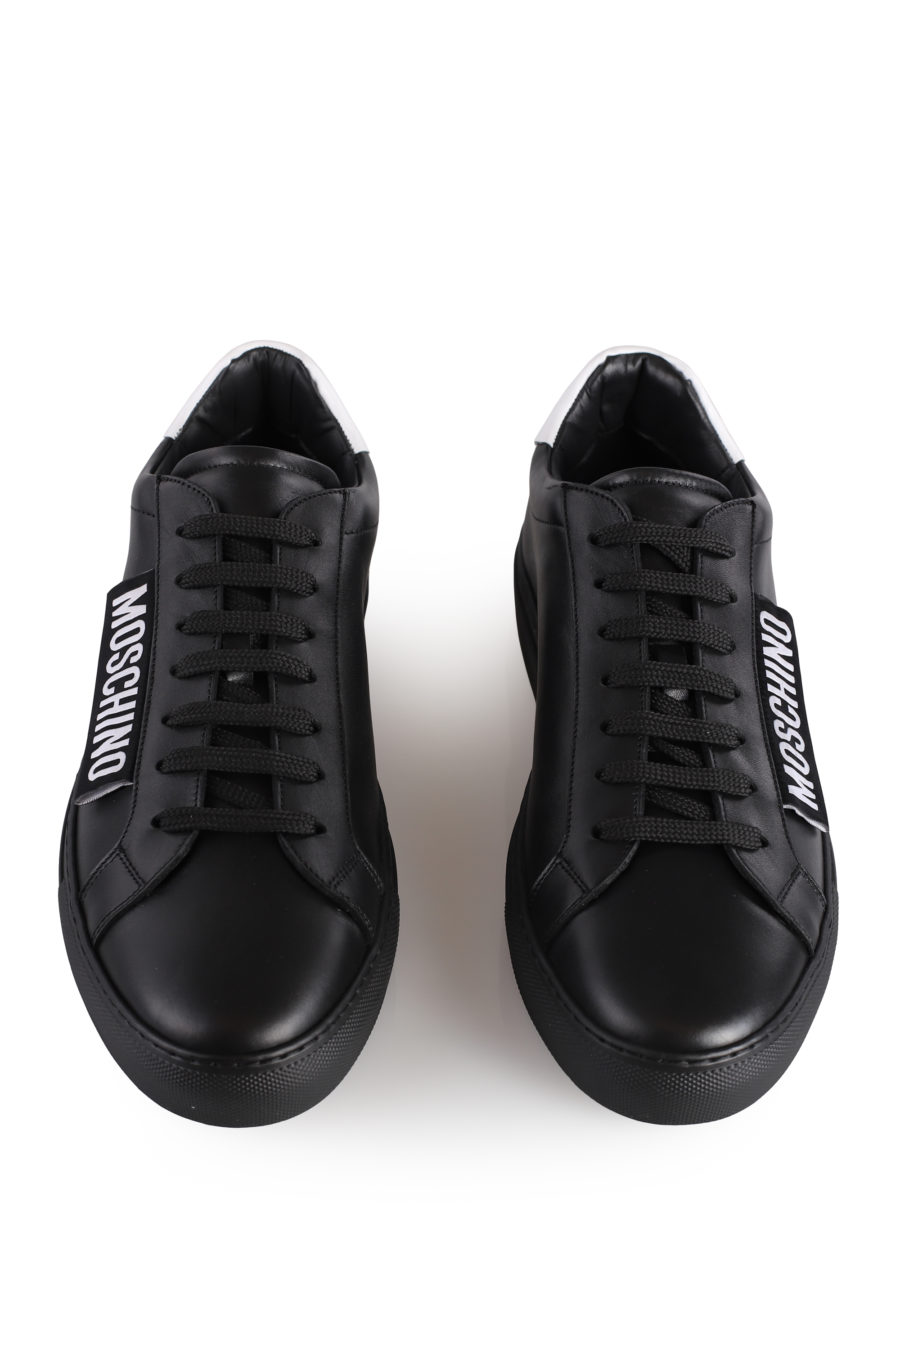 Zapatillas negras con logotipo blanco - IMG 1033